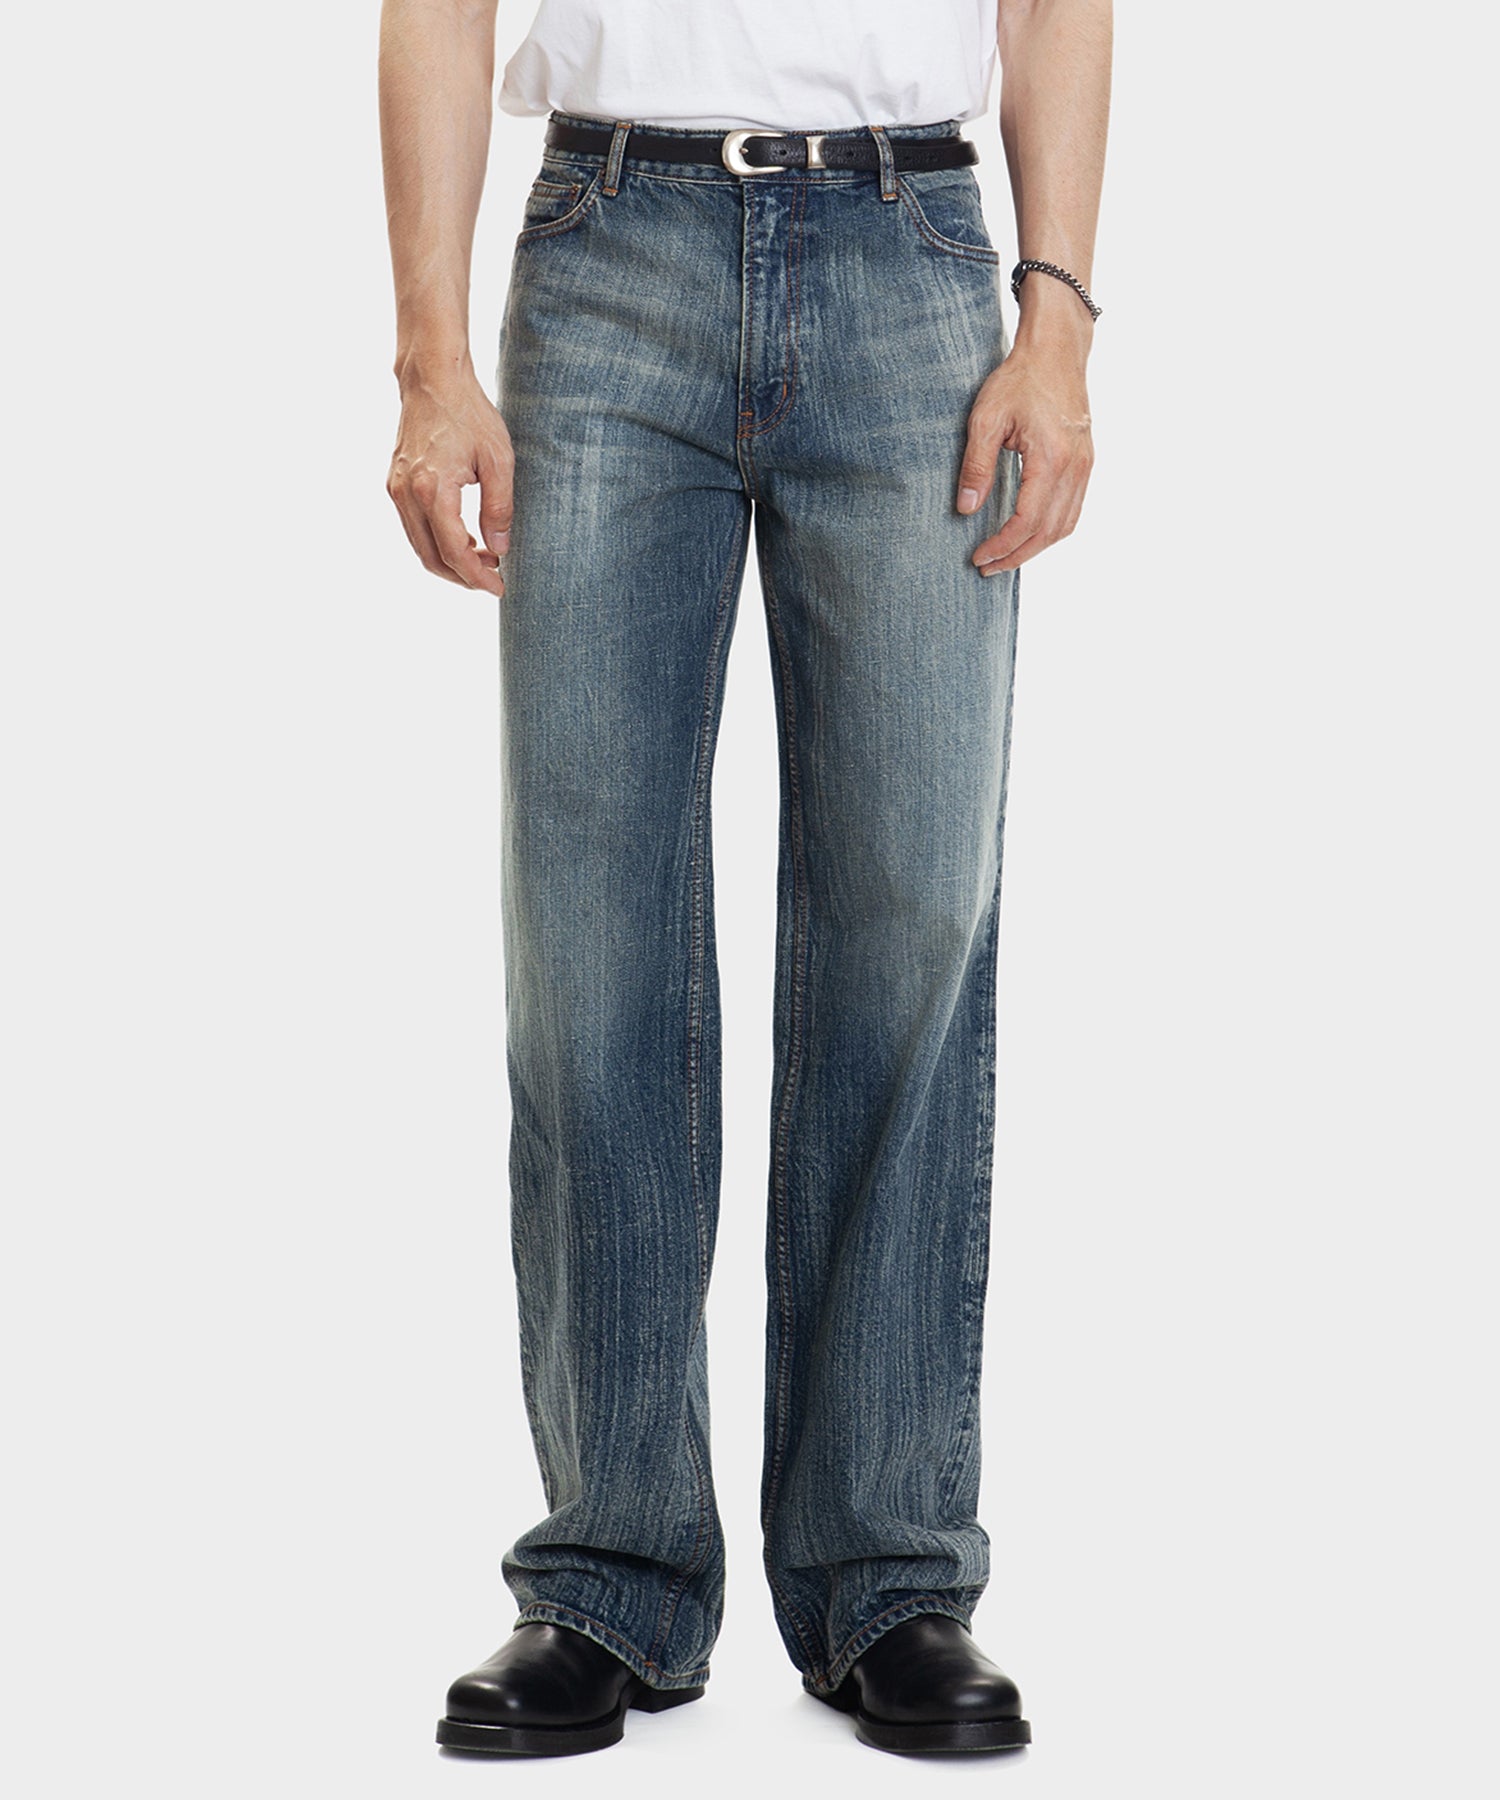 ロングジッパー デニムパンツ / Long Zipper Denim Pants (Blue) – 60